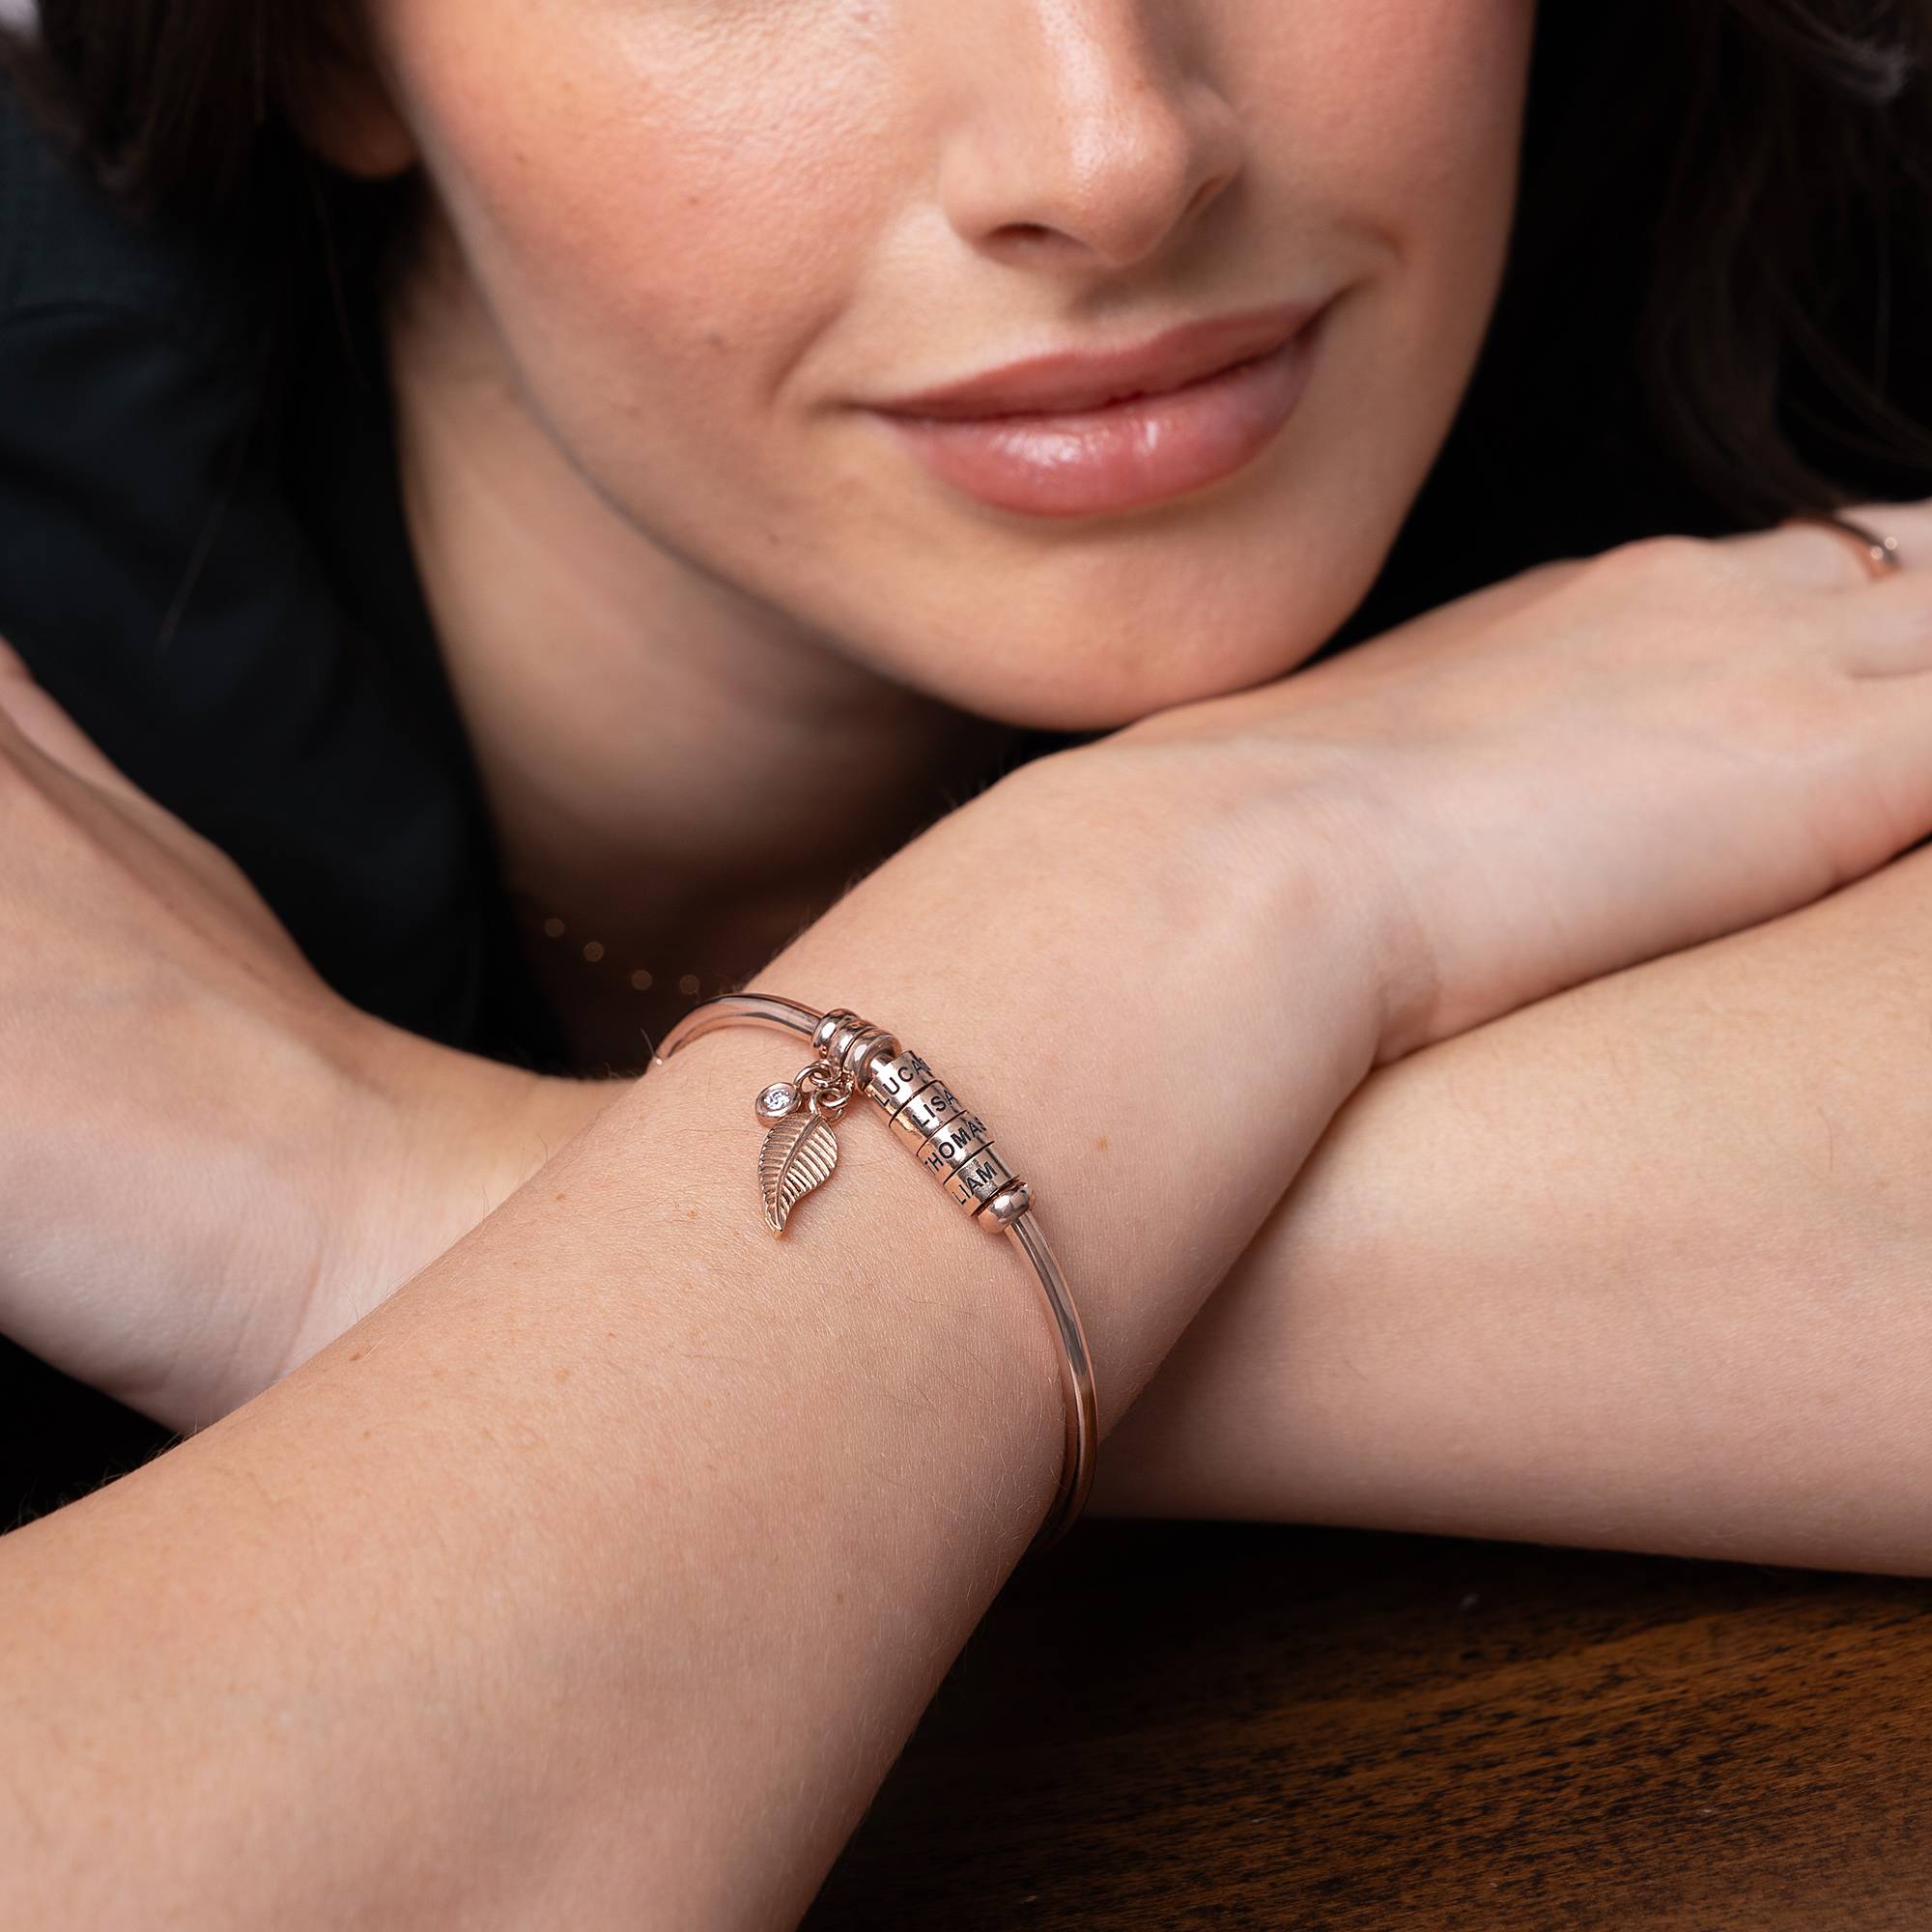 Linda Armband met Gegraveerde Kralen en Diamant in 18K Rosé Goud Verguld-4 Productfoto